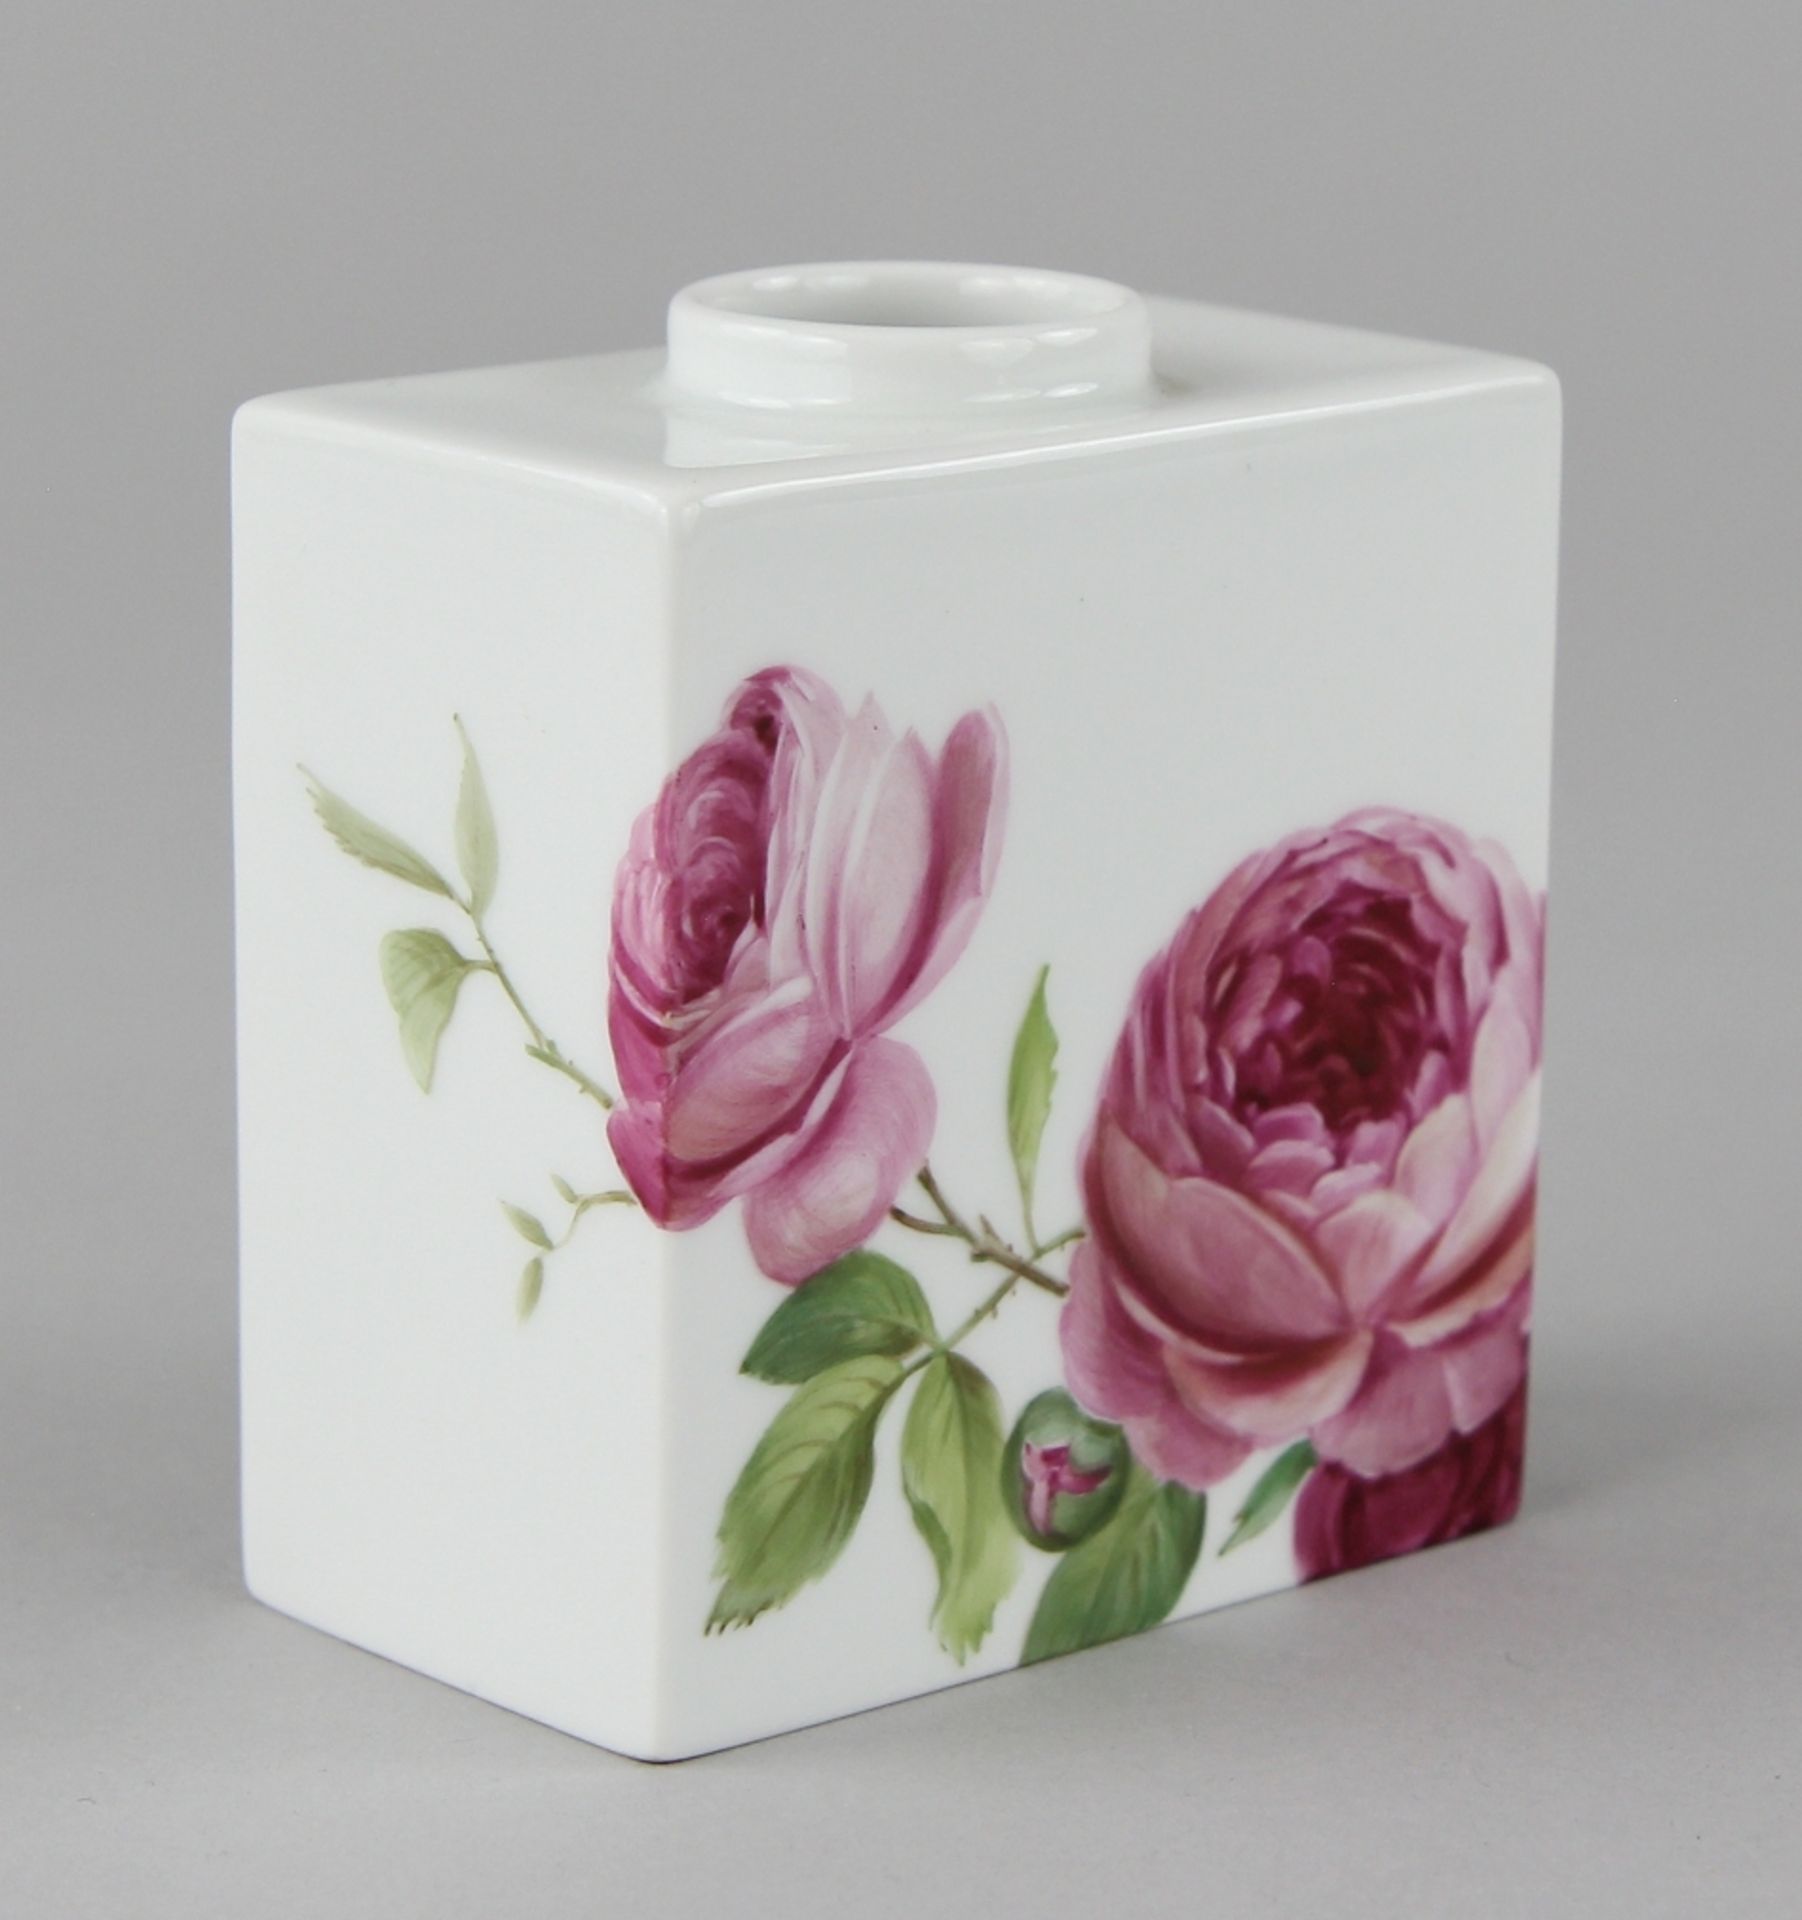 KPM- Vase "Cadre 1 mit Englischer Rose" - Image 2 of 3